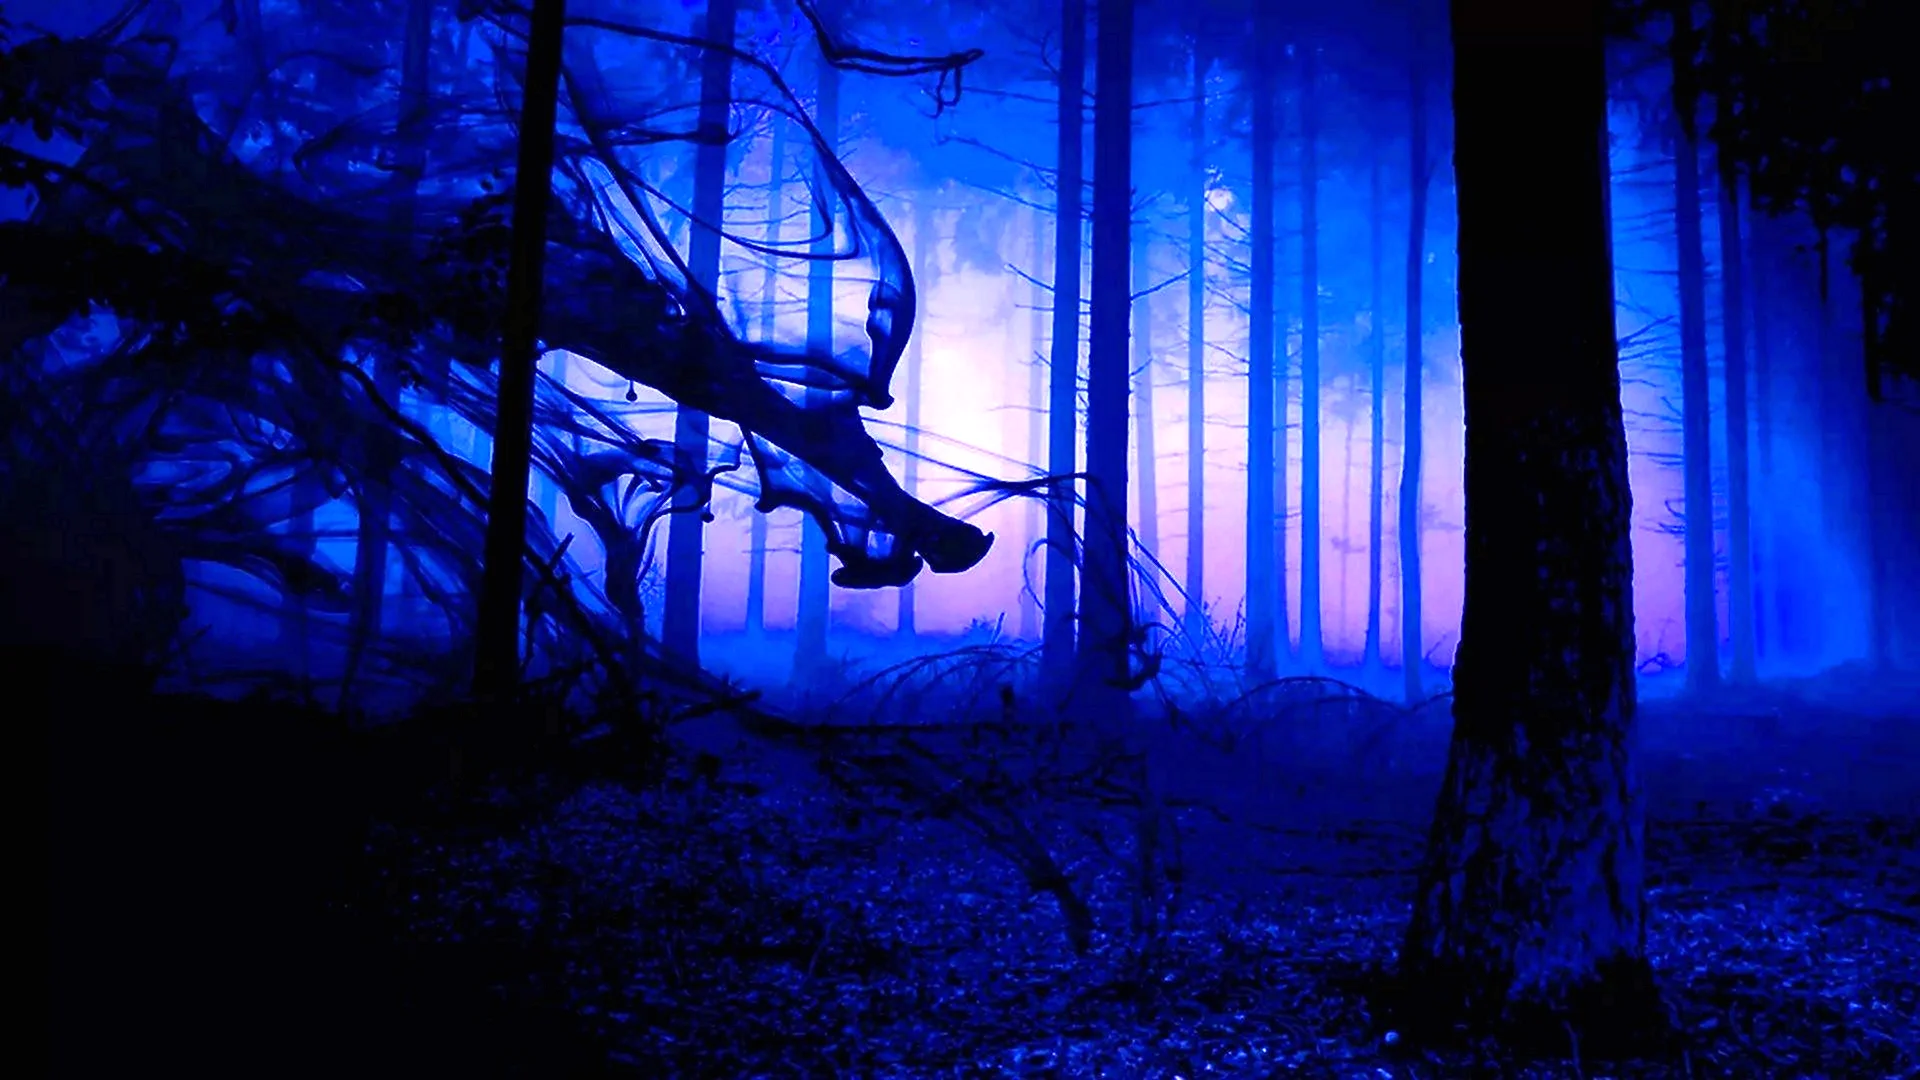 Страшный лес ночью